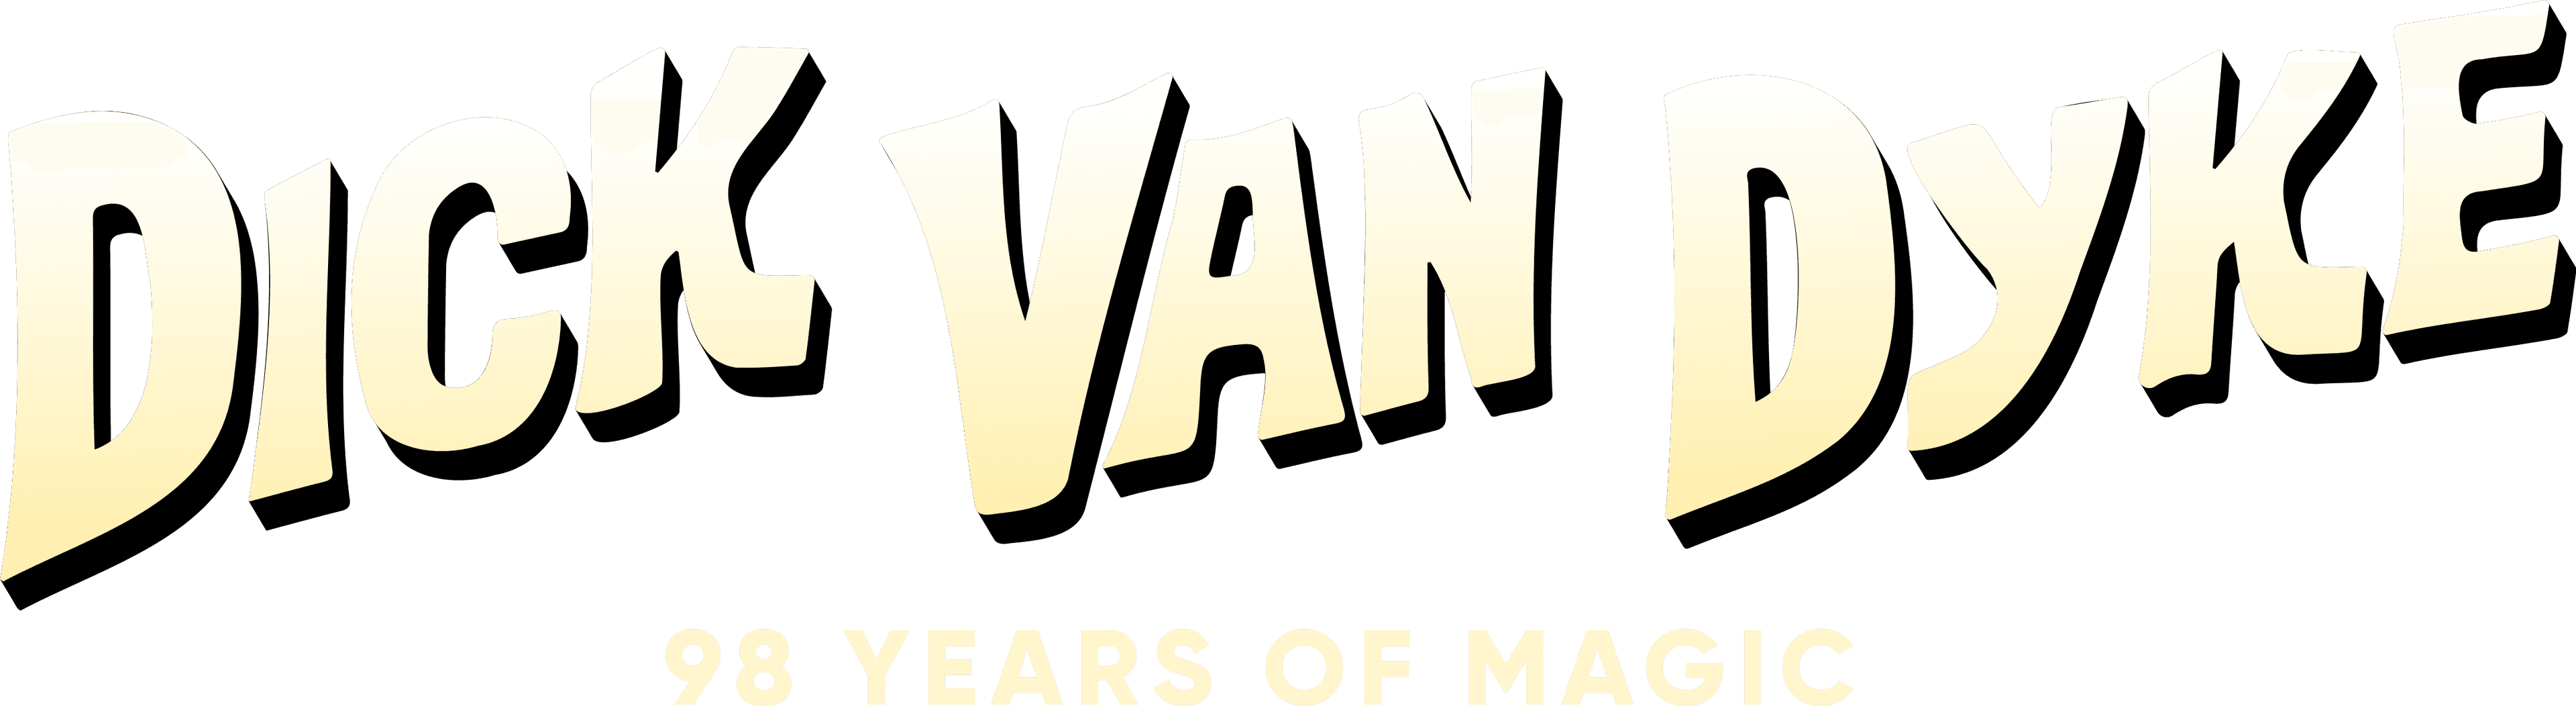 Dick Van Dyke: 98 Years of Magic logo